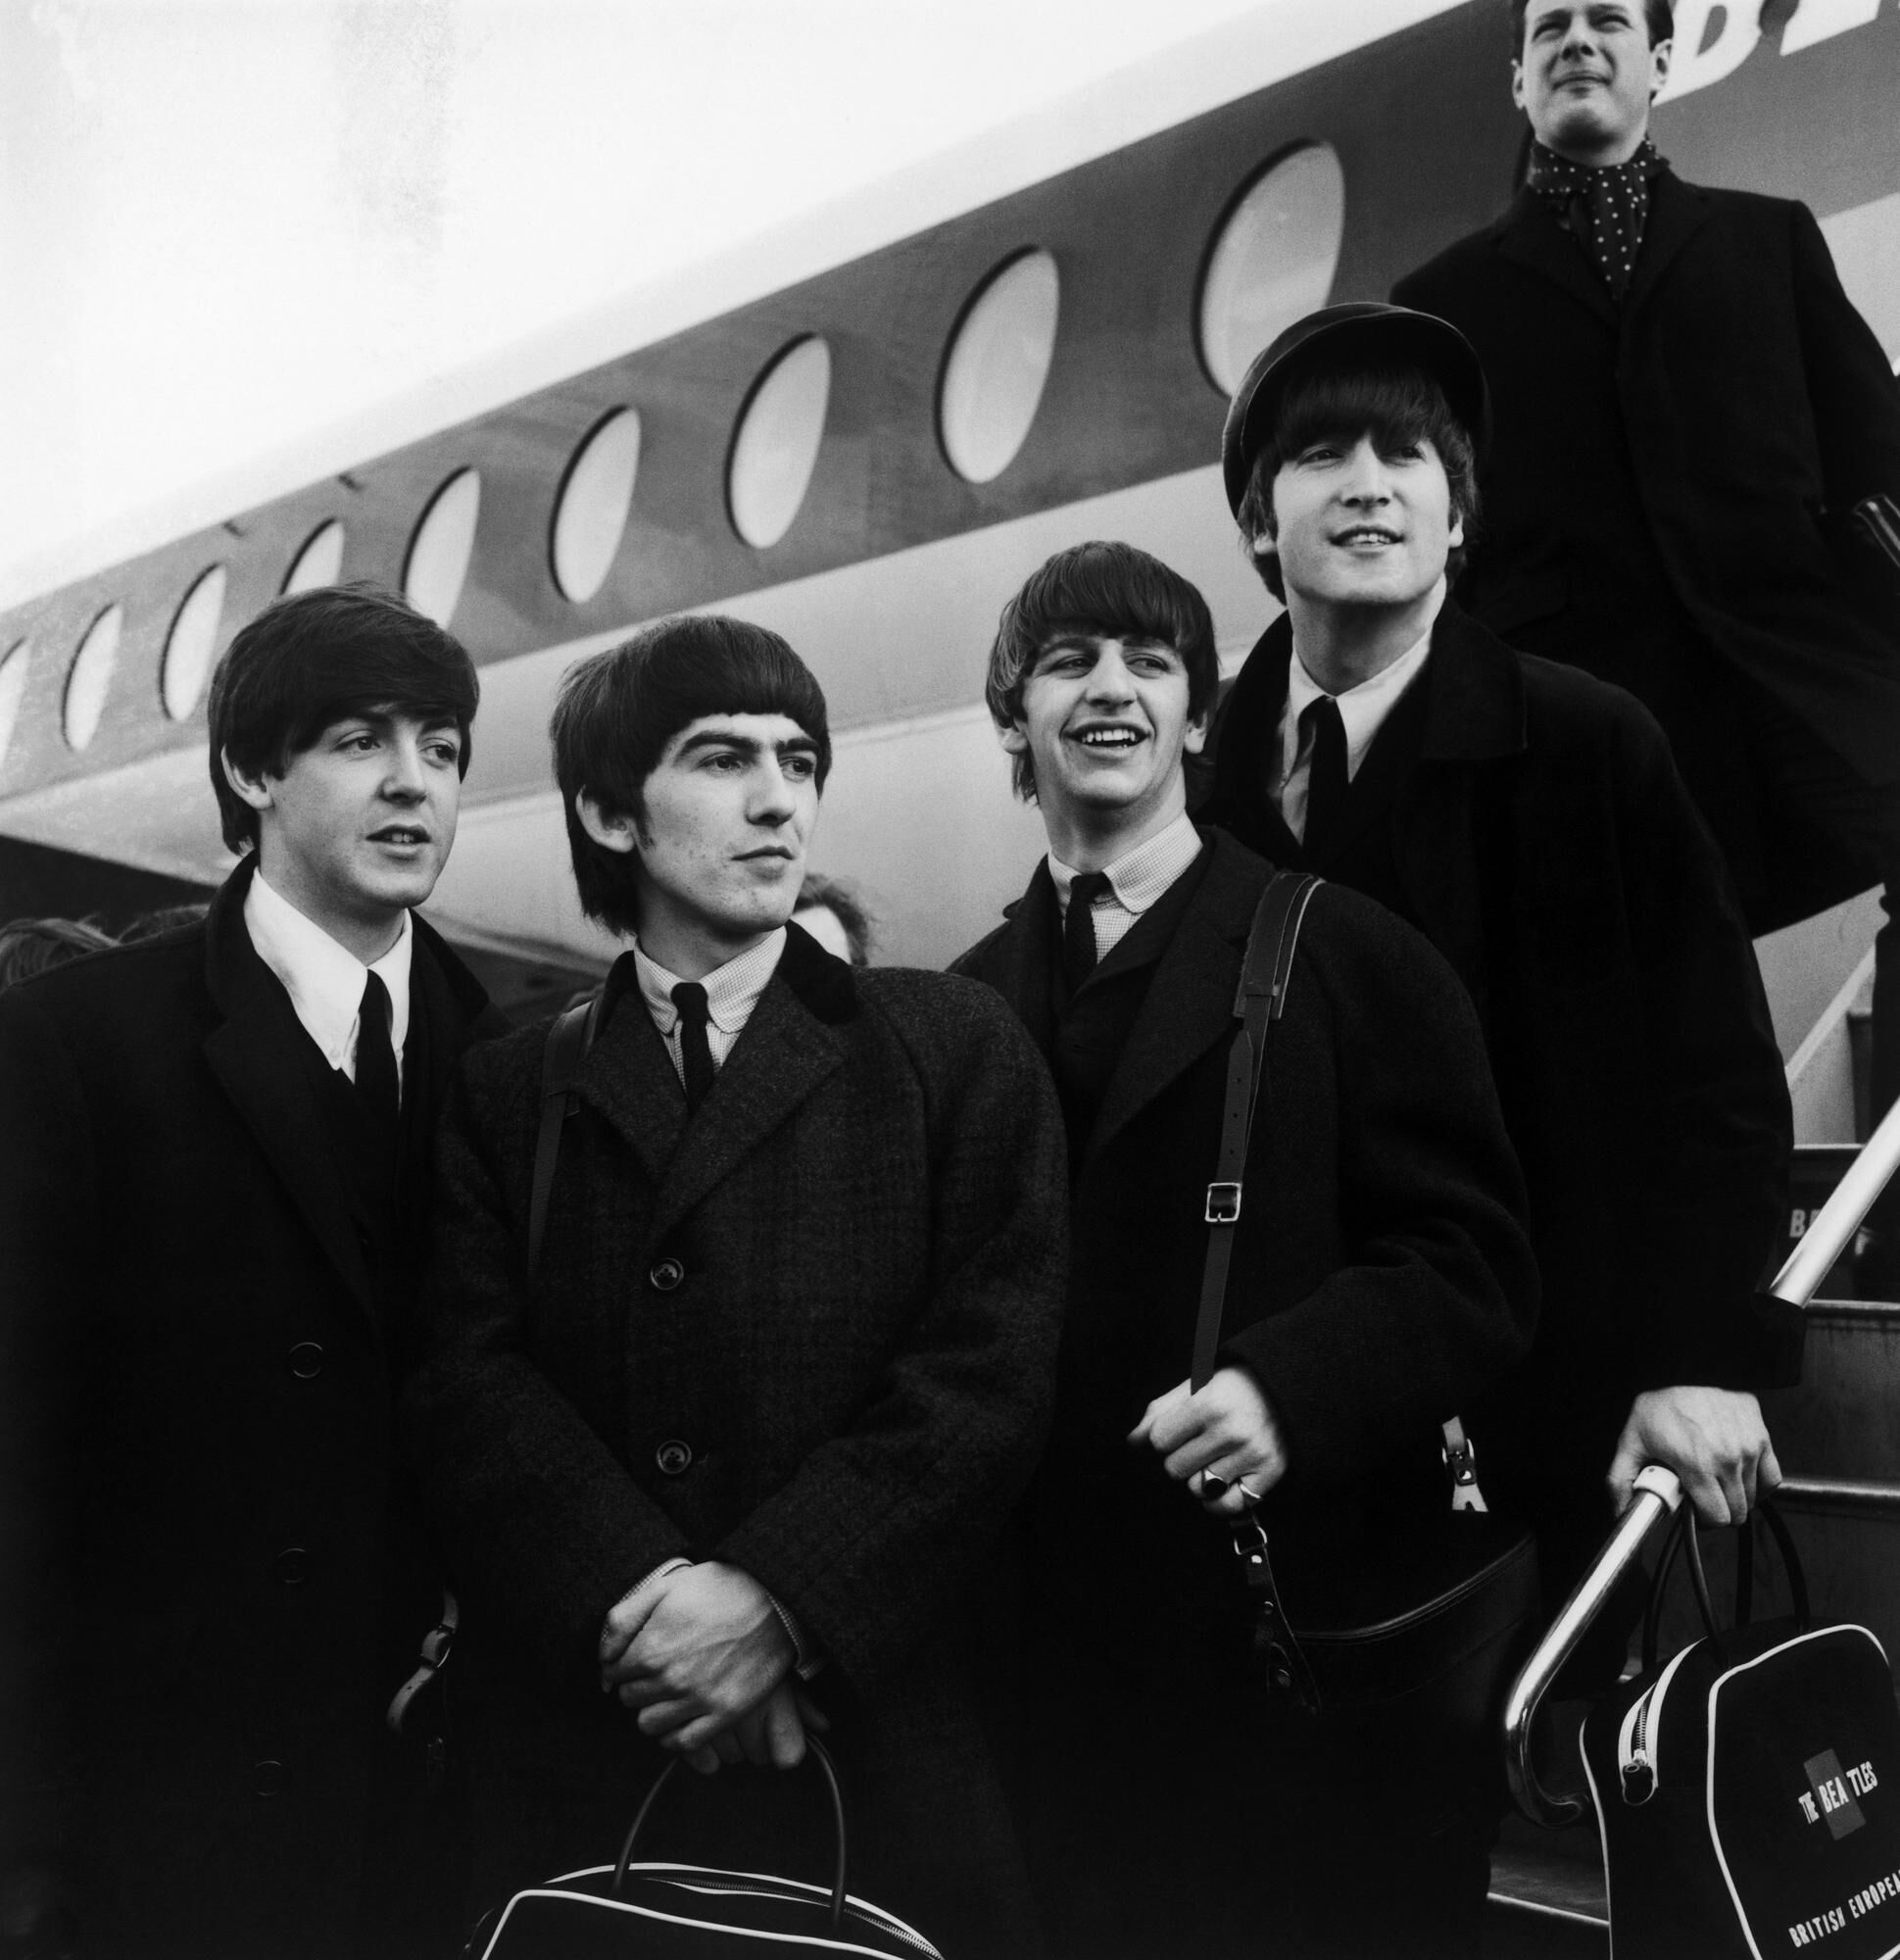 60 ans de Beatles célébrés dans le beau livre Iconic The Beatles -  Rock&folk